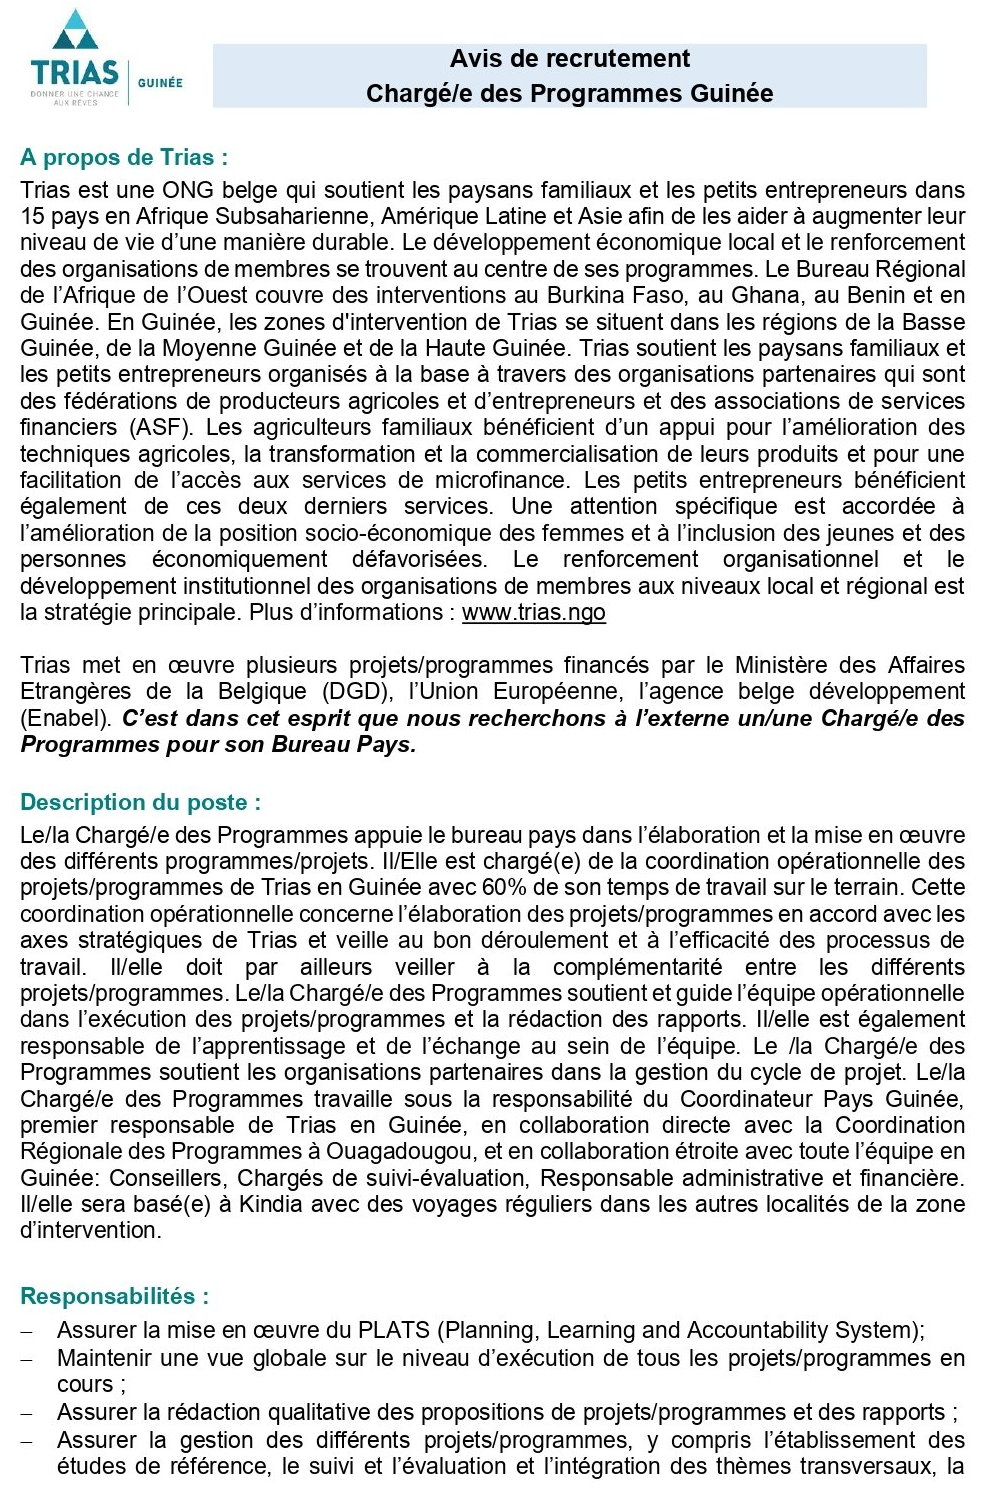 Avis de recrutement Chargé/e des Programmes Guinée | page 1